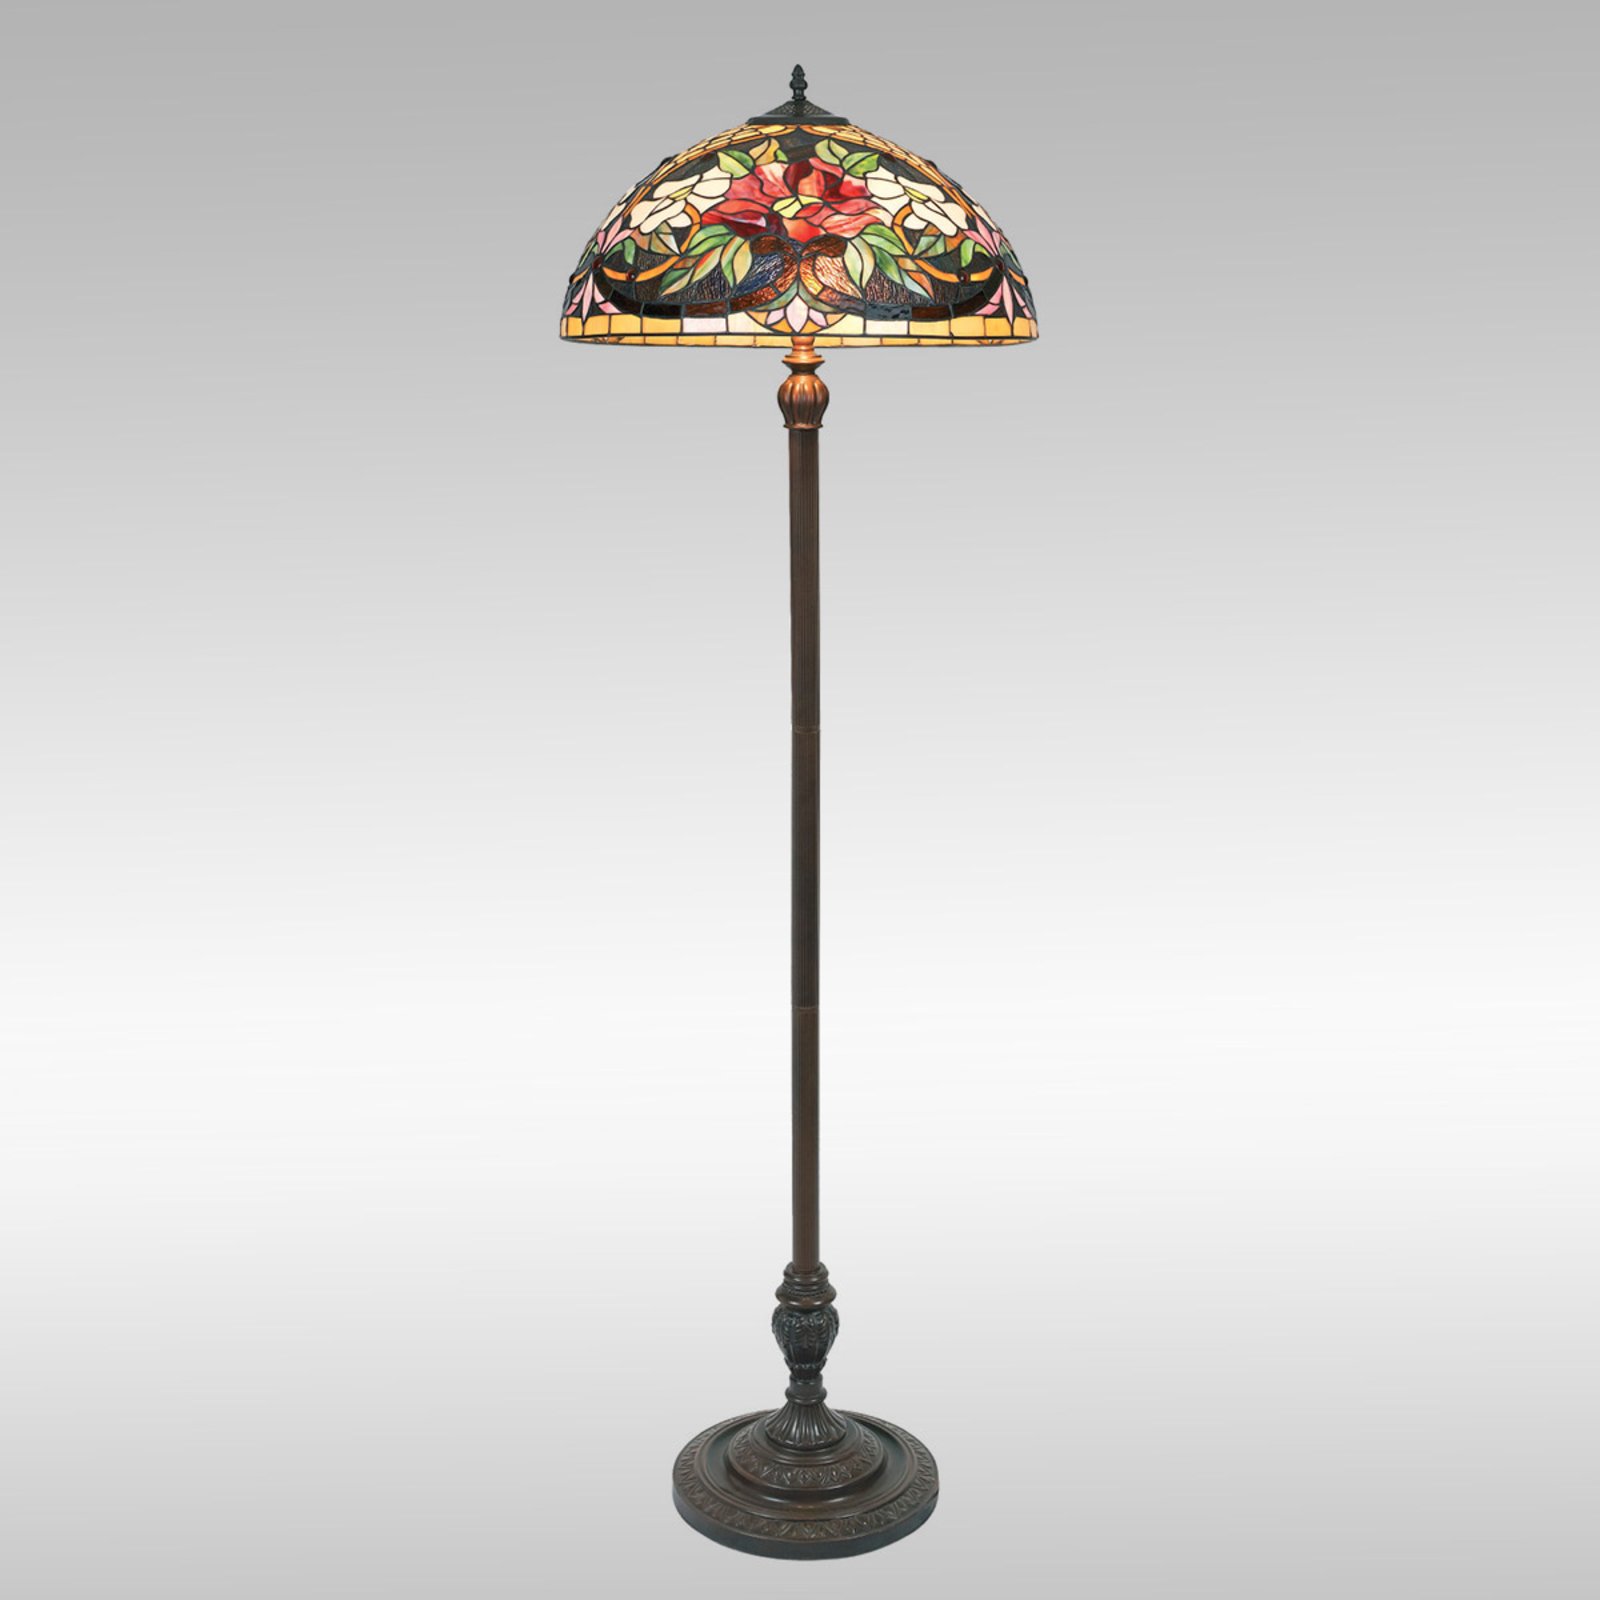 Kolorowa lampa stojąca ARIADNE w stylu Tiffany